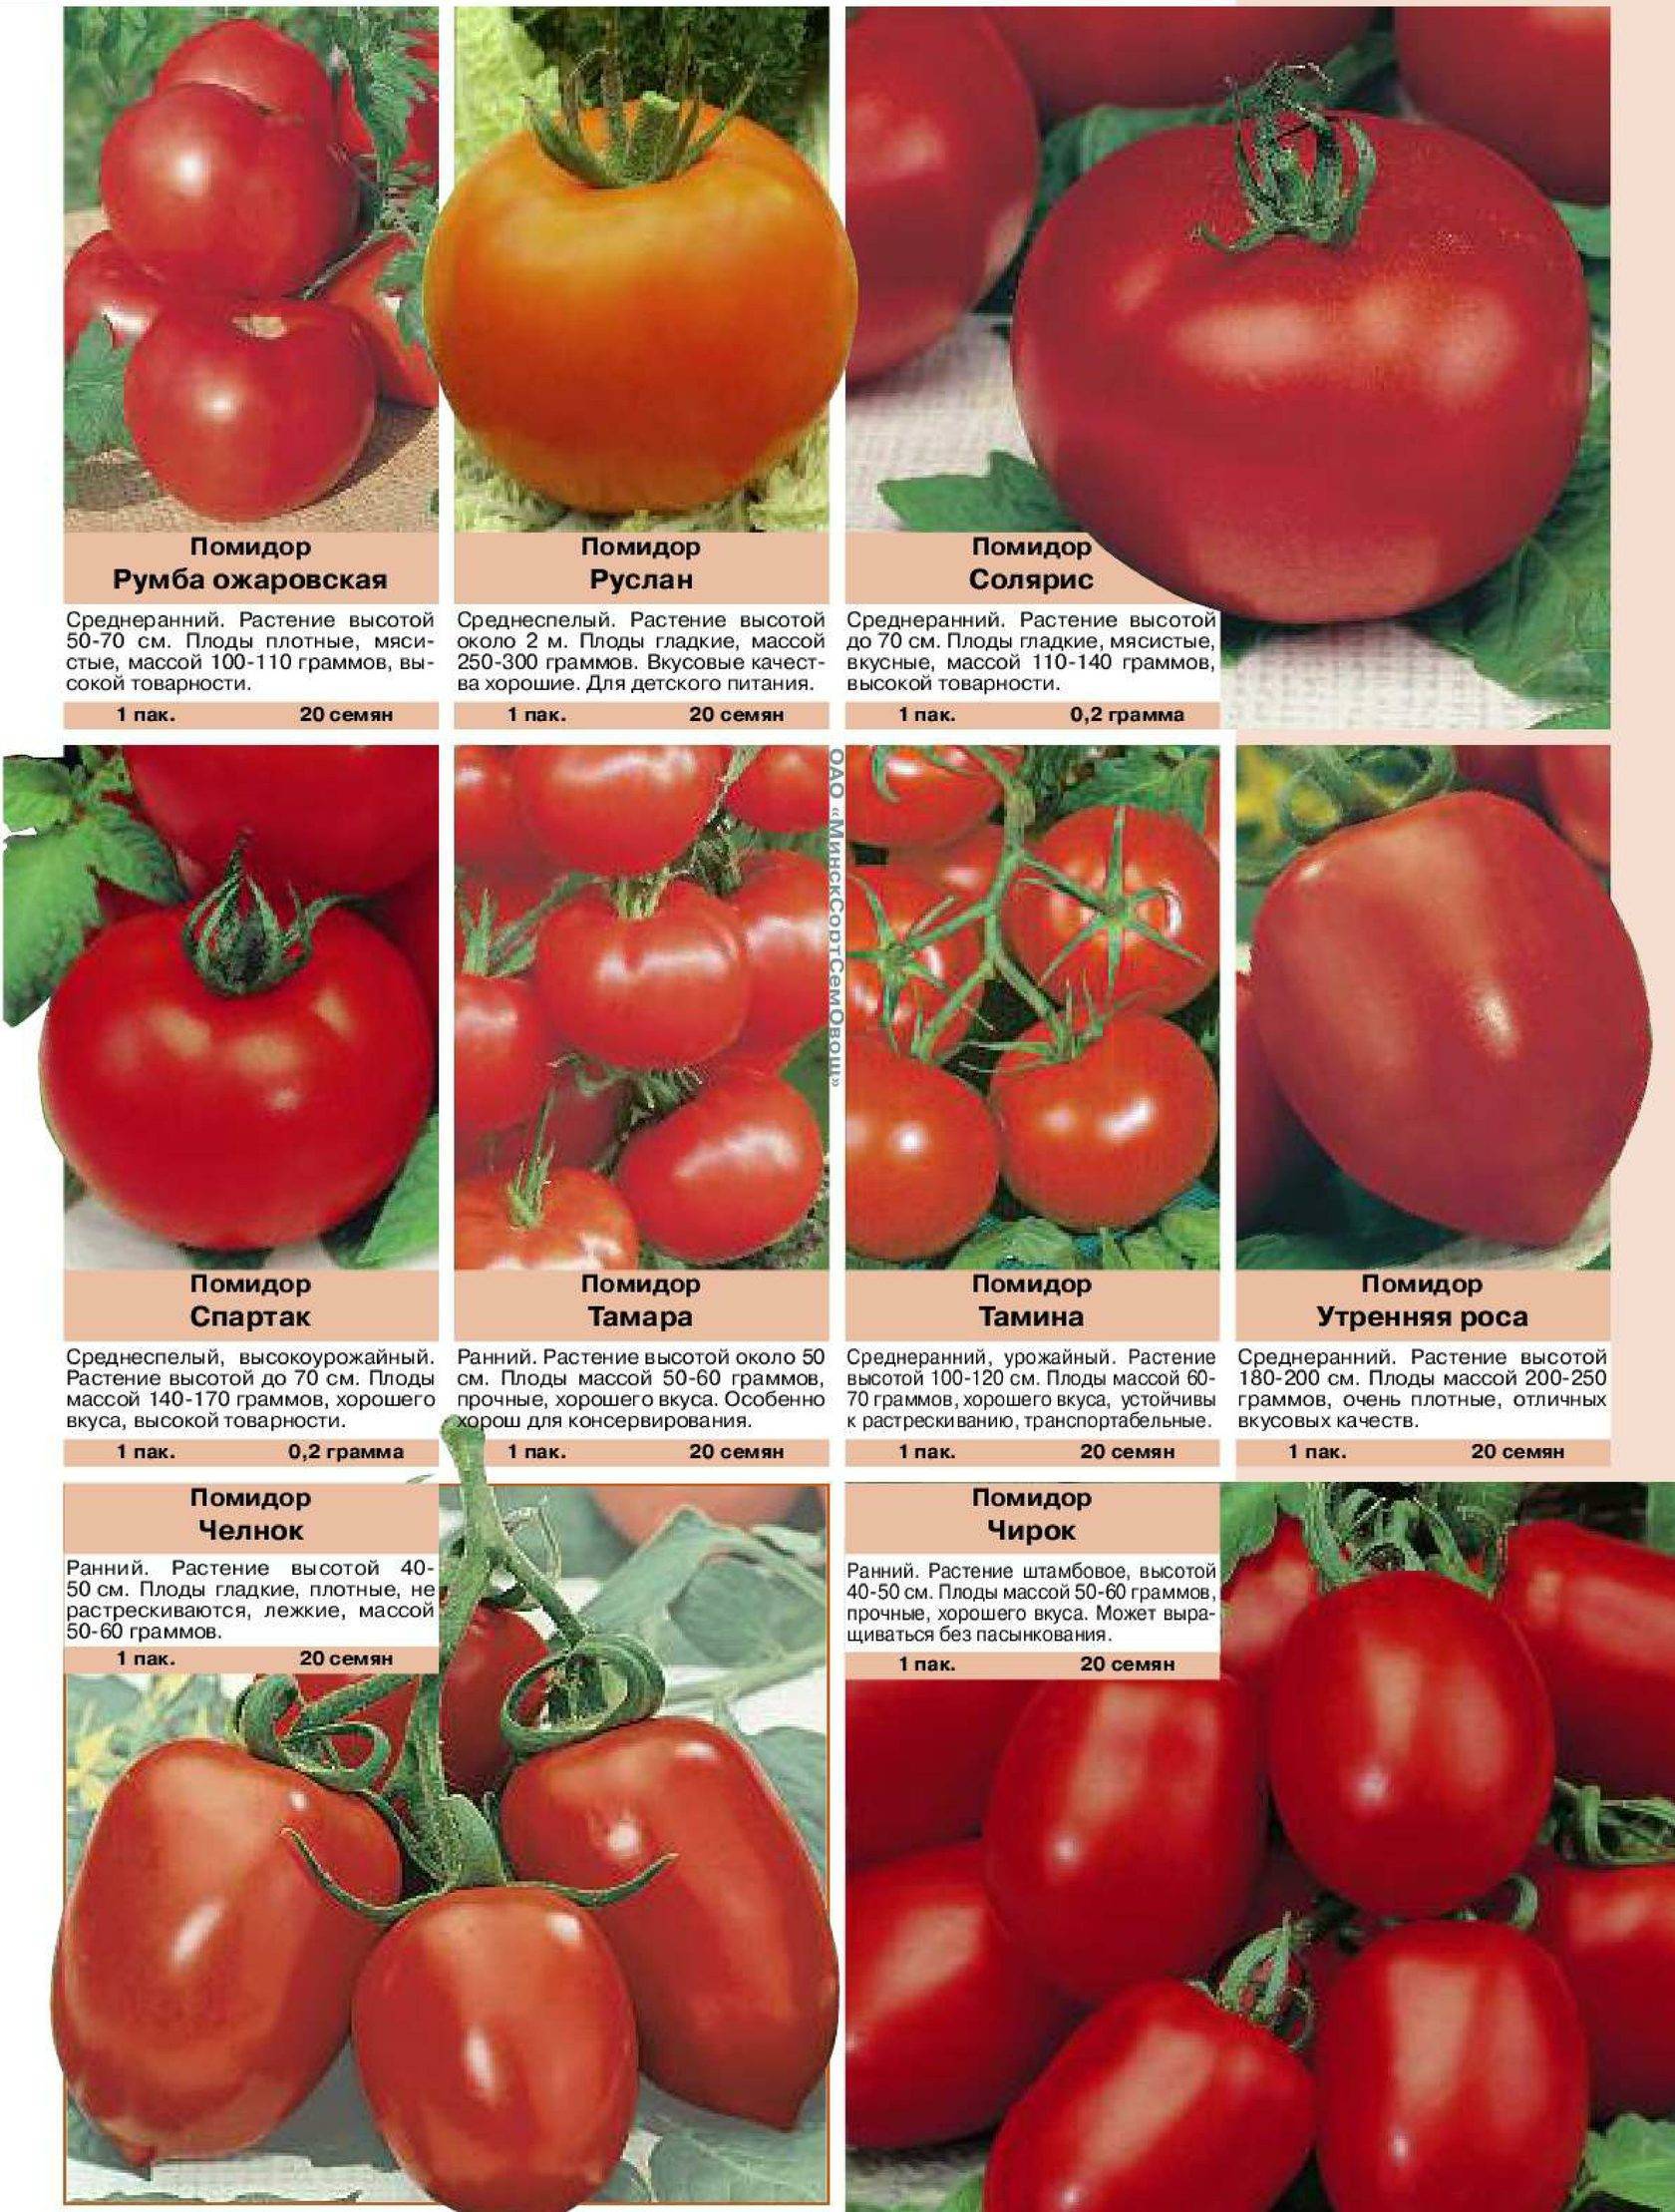 Лучшие сорта помидоров для выращивания в Витебской области